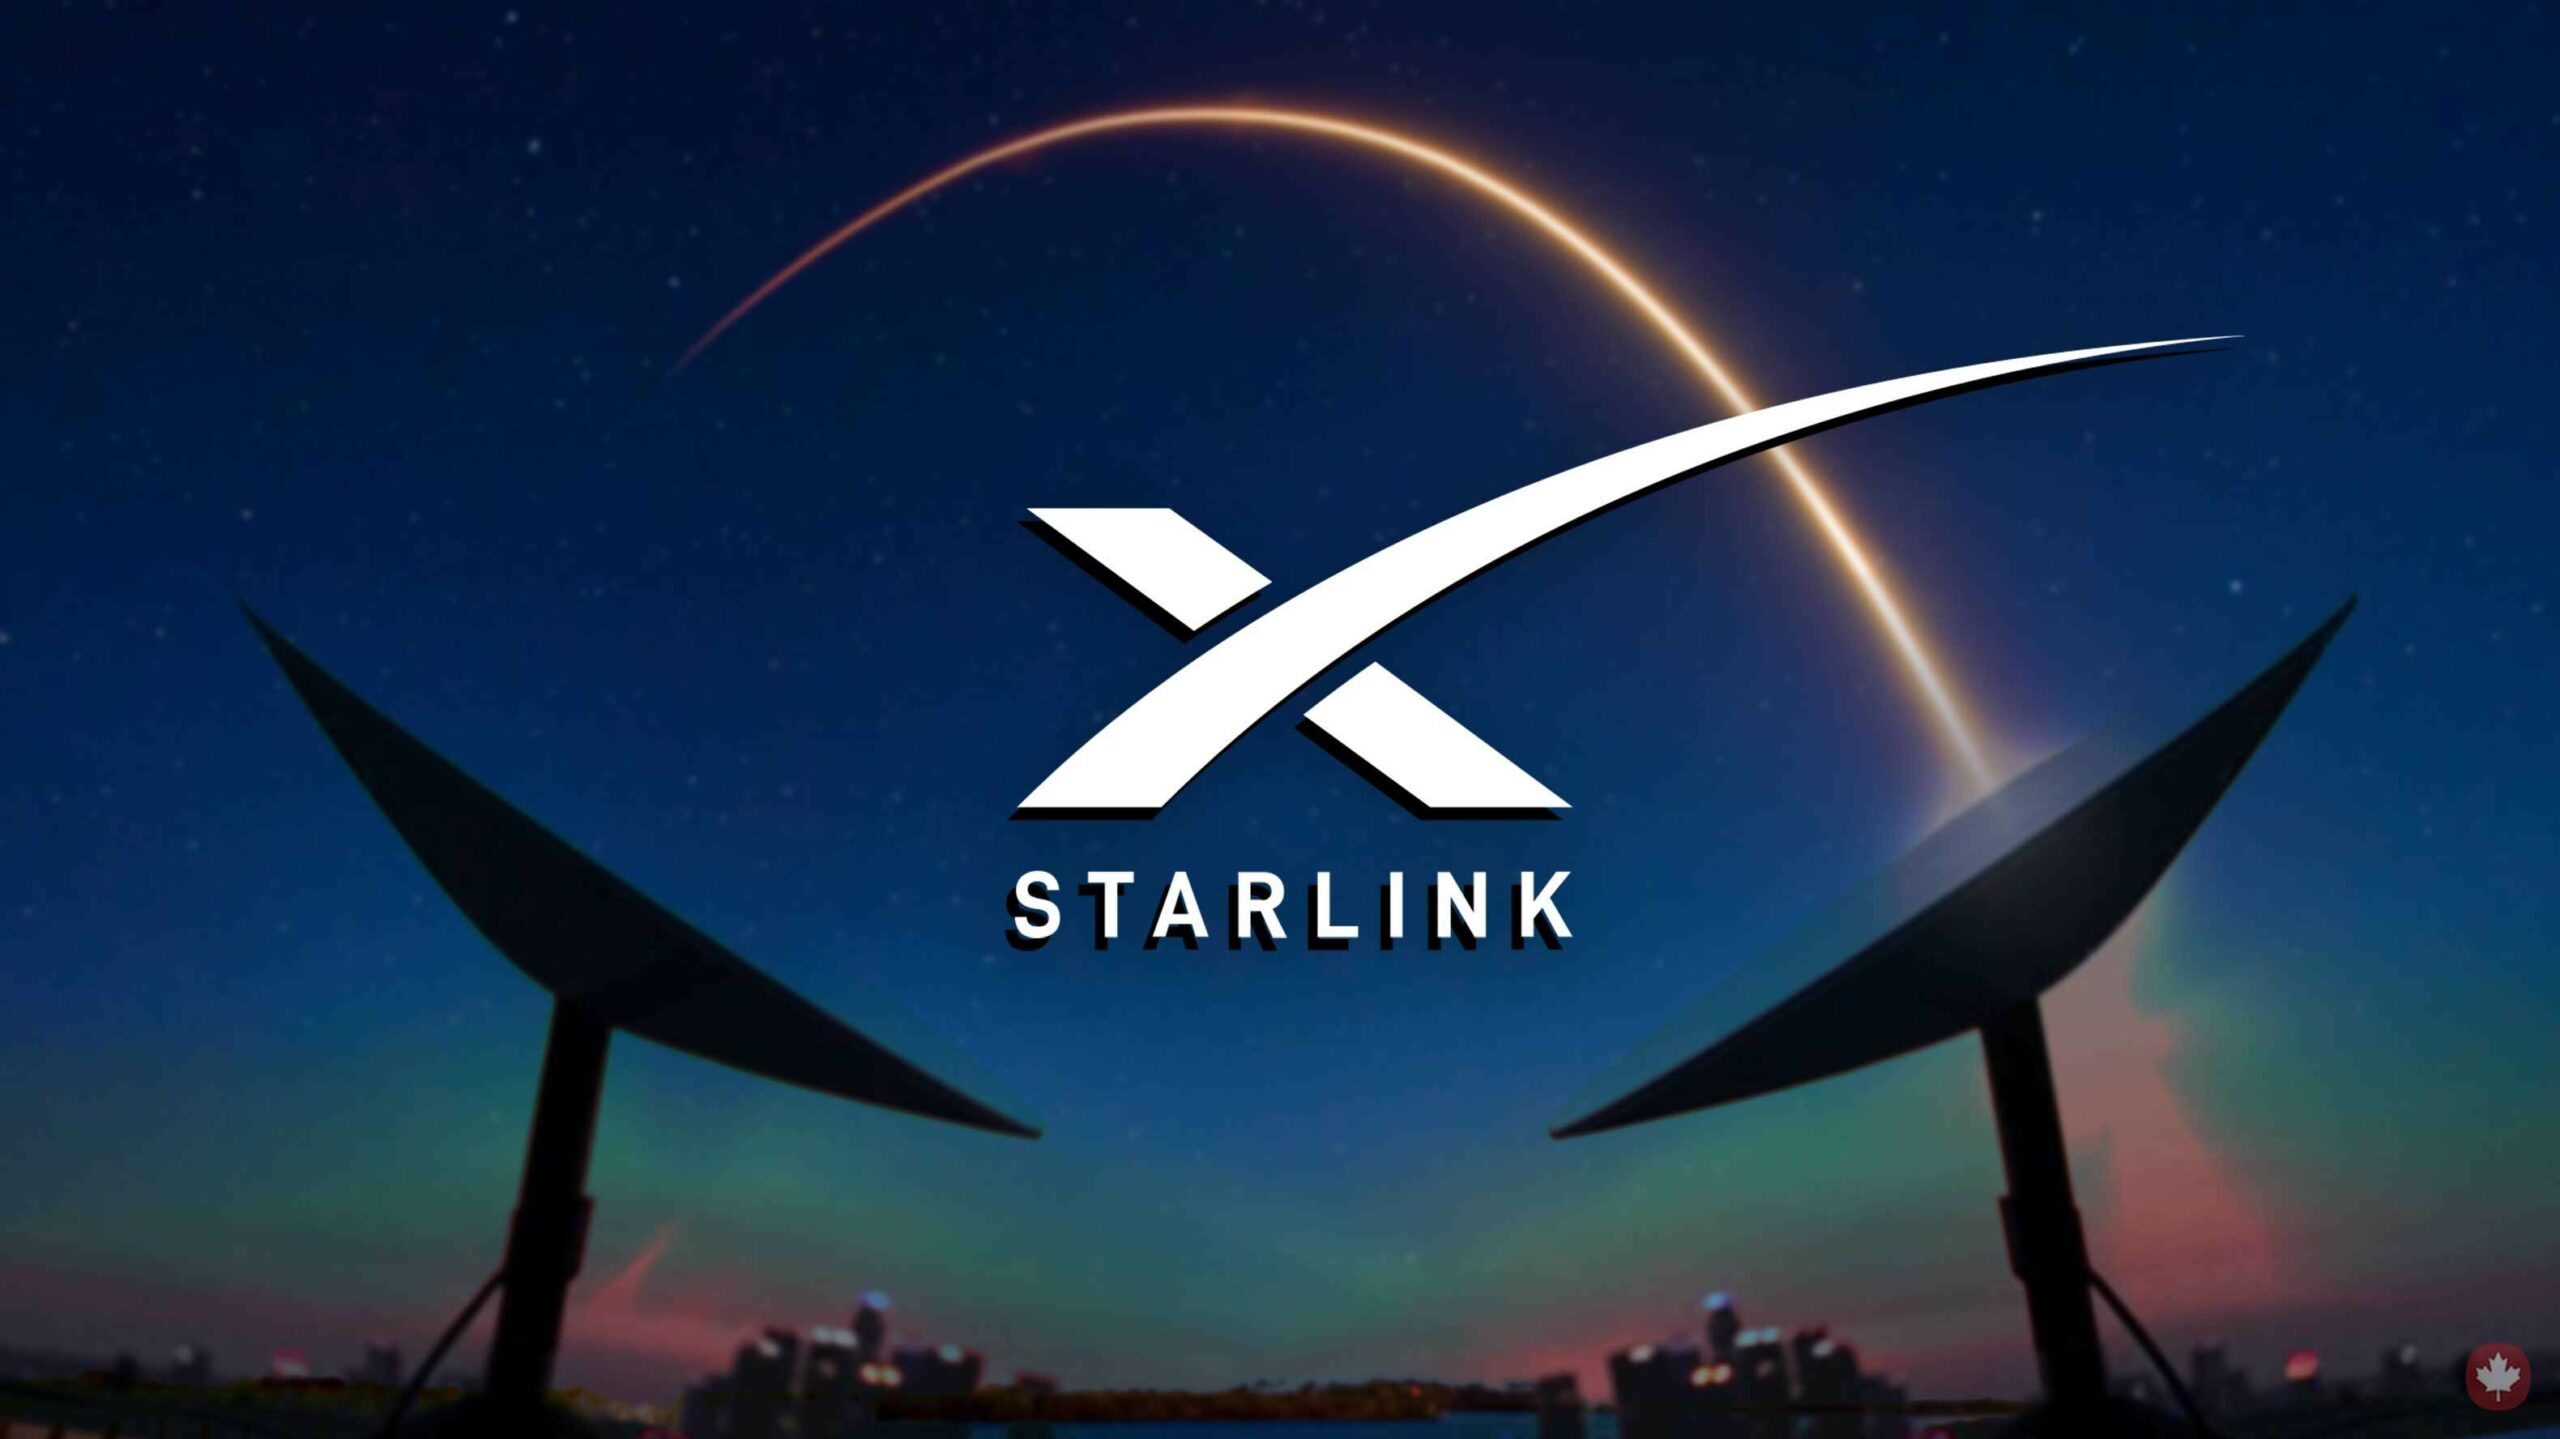 اینترنت ماهواره ای starlink چیست و چگونه کار میکند ؟